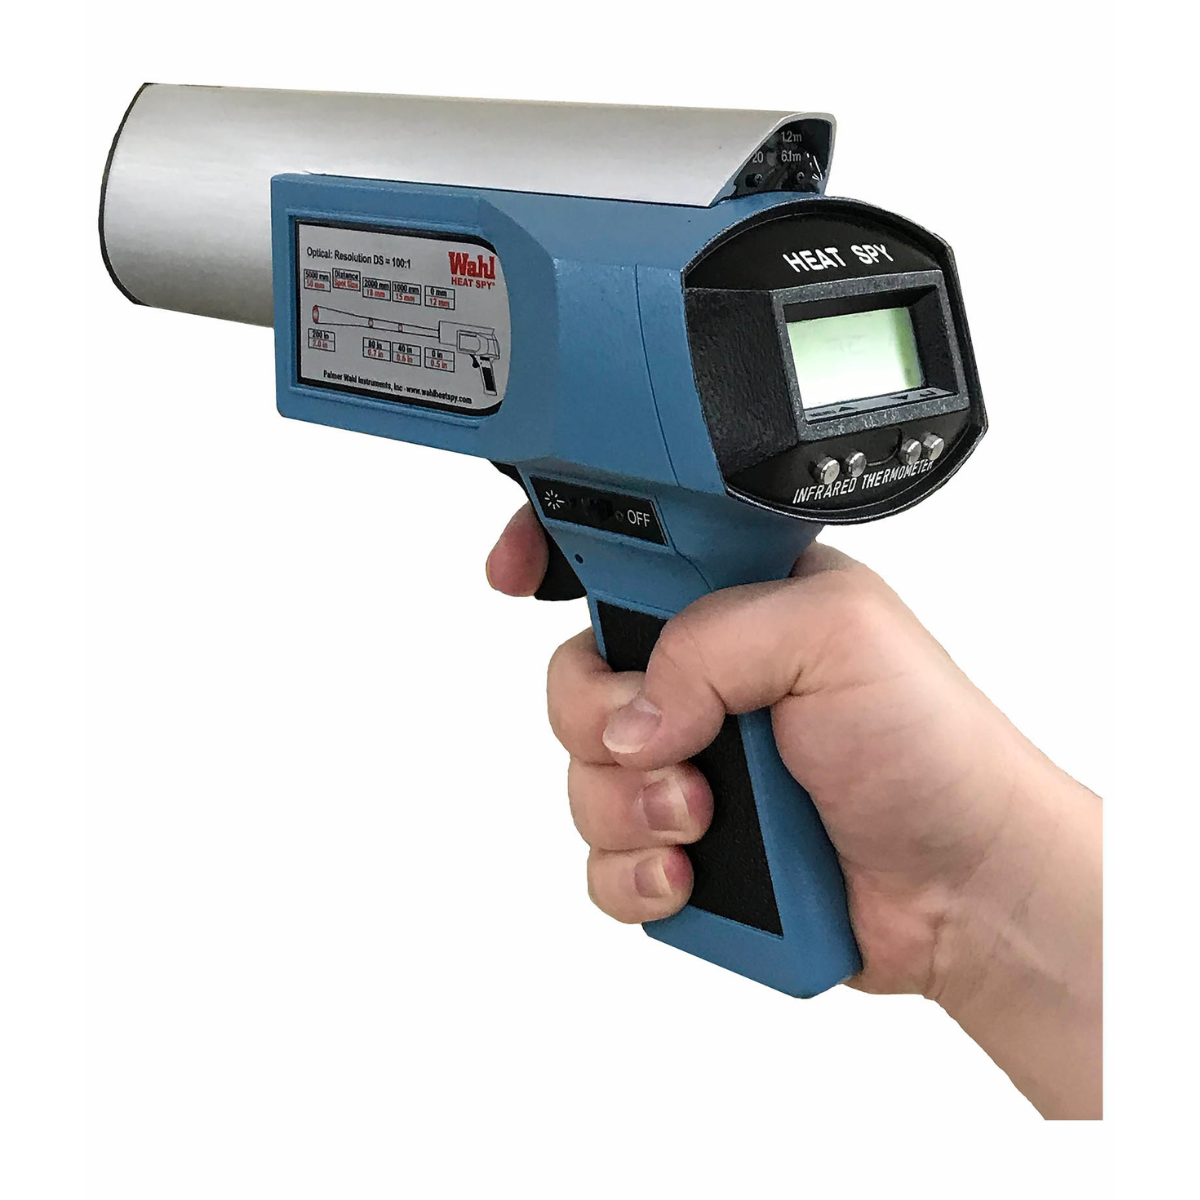 Industrial Handheld Pyrometer Meter Digital Temperature Gun IR